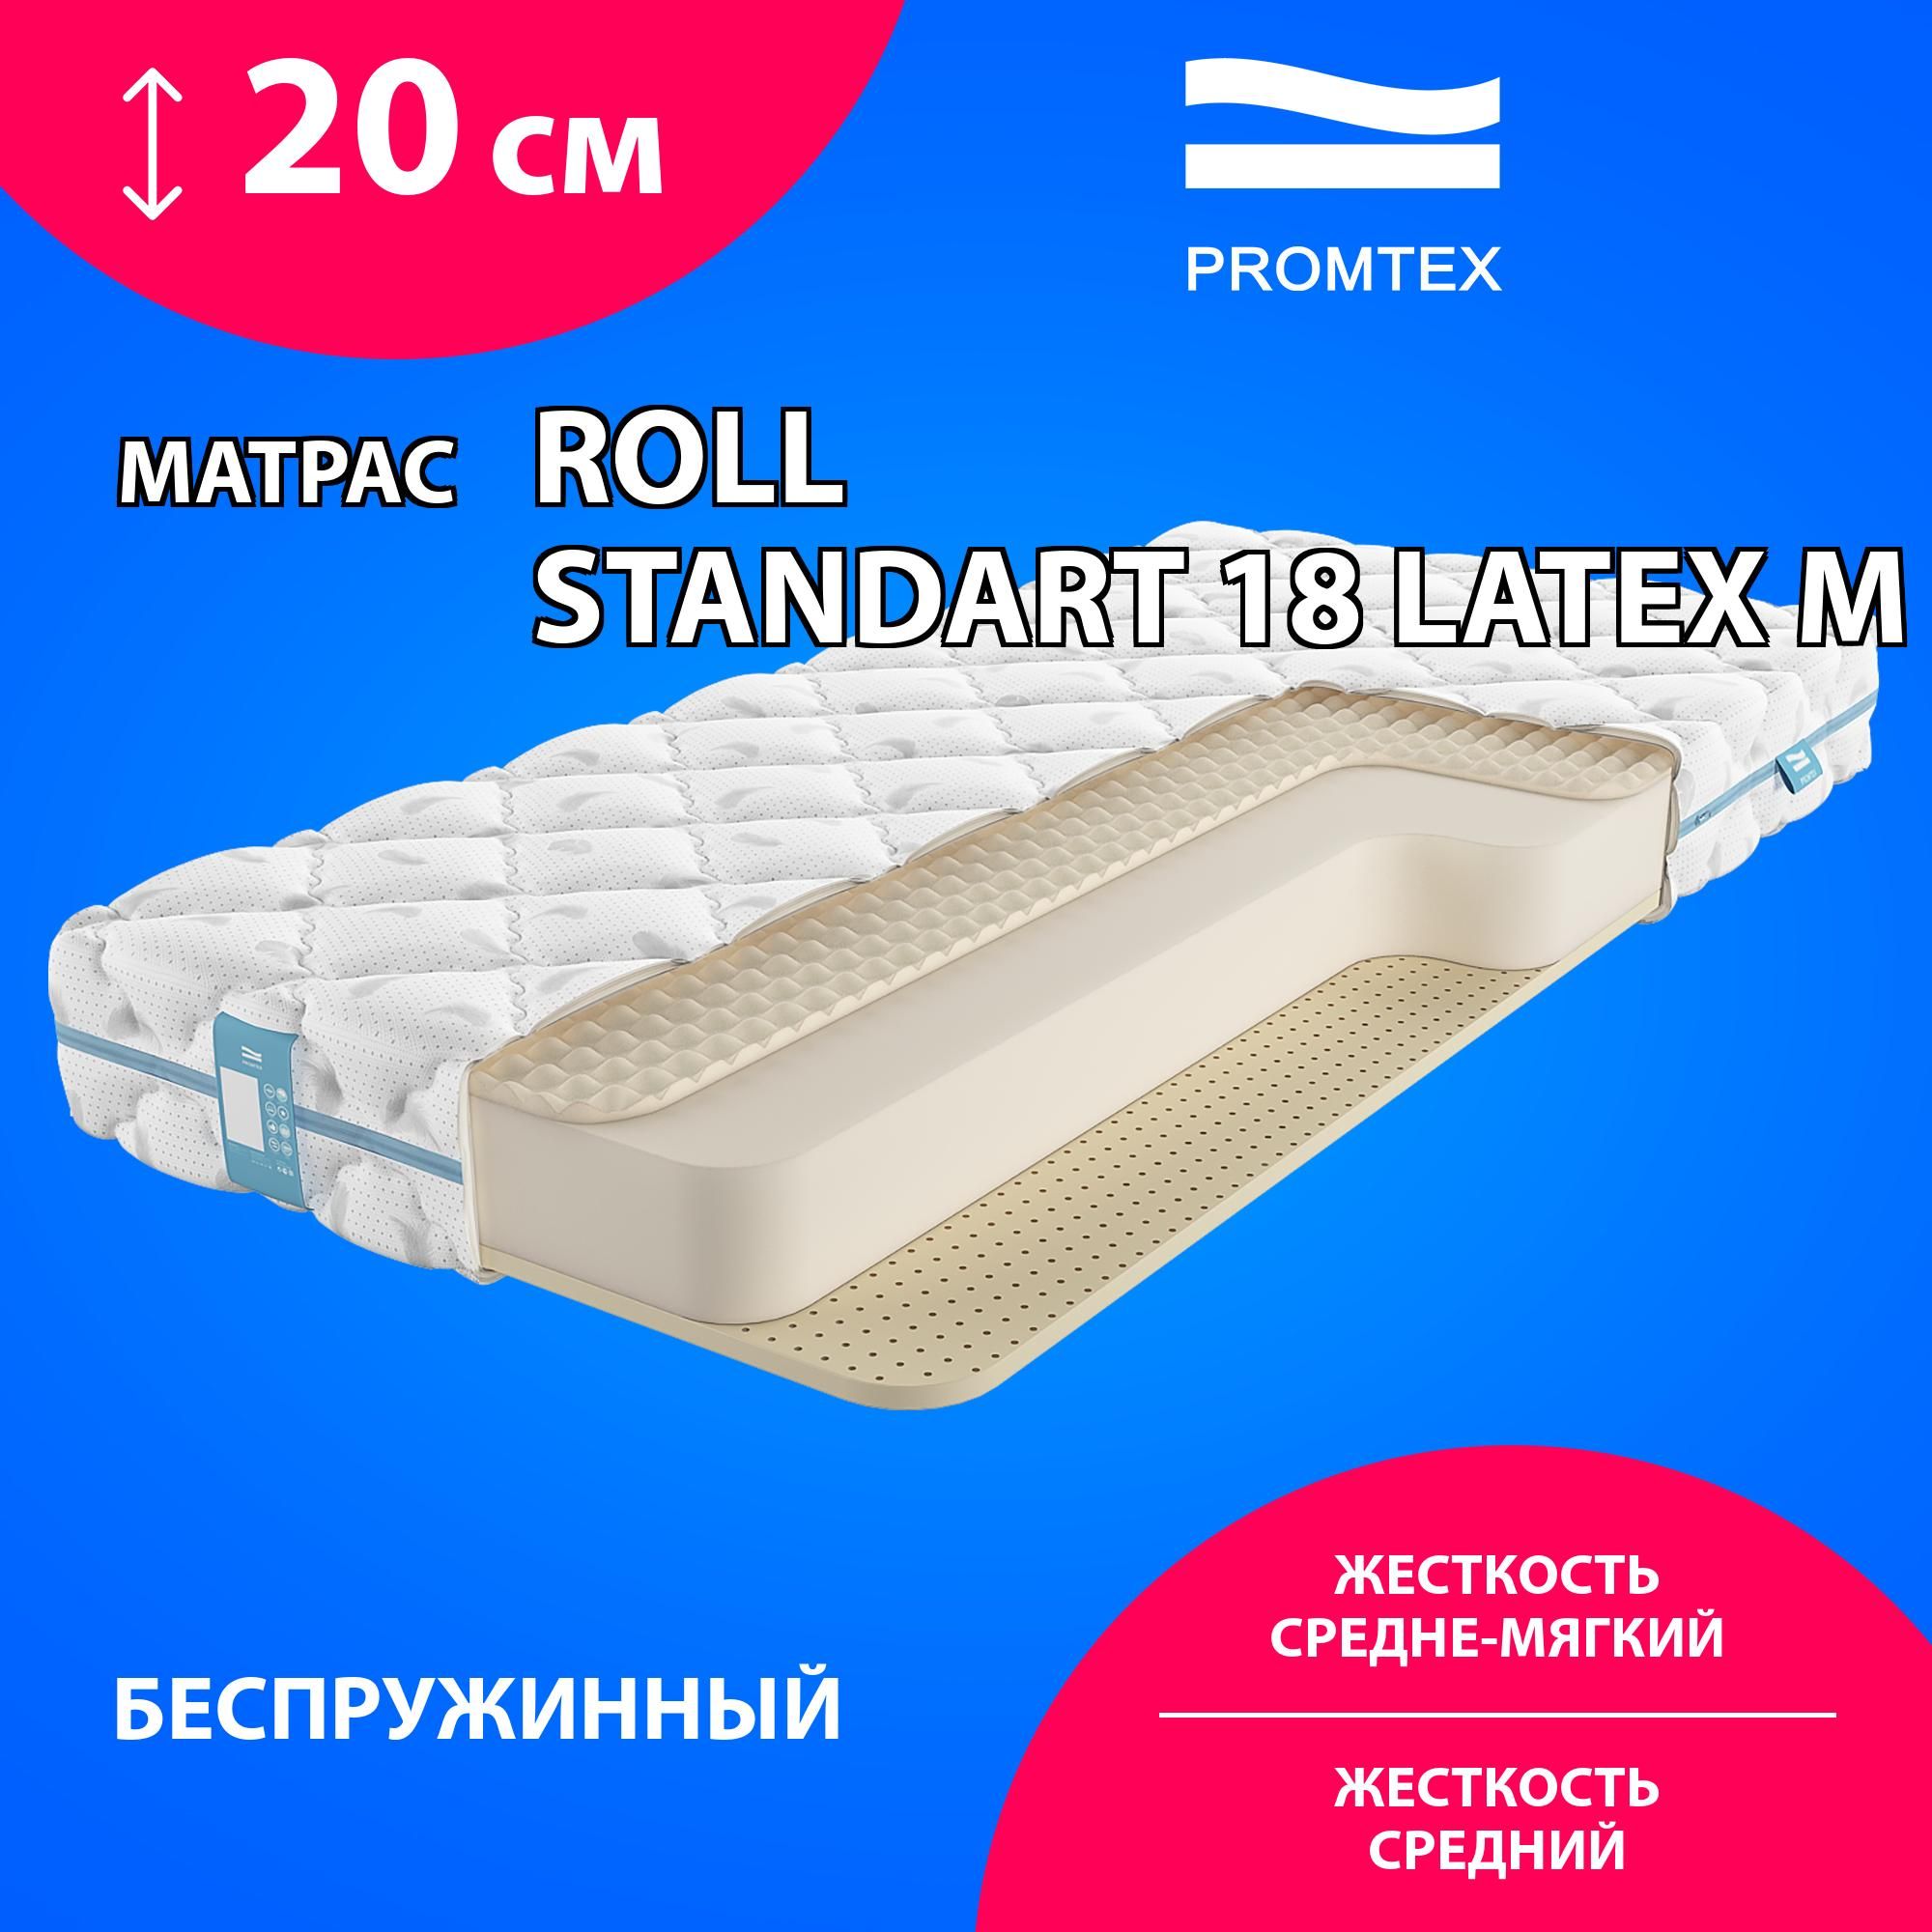 Матрас standart light m roll